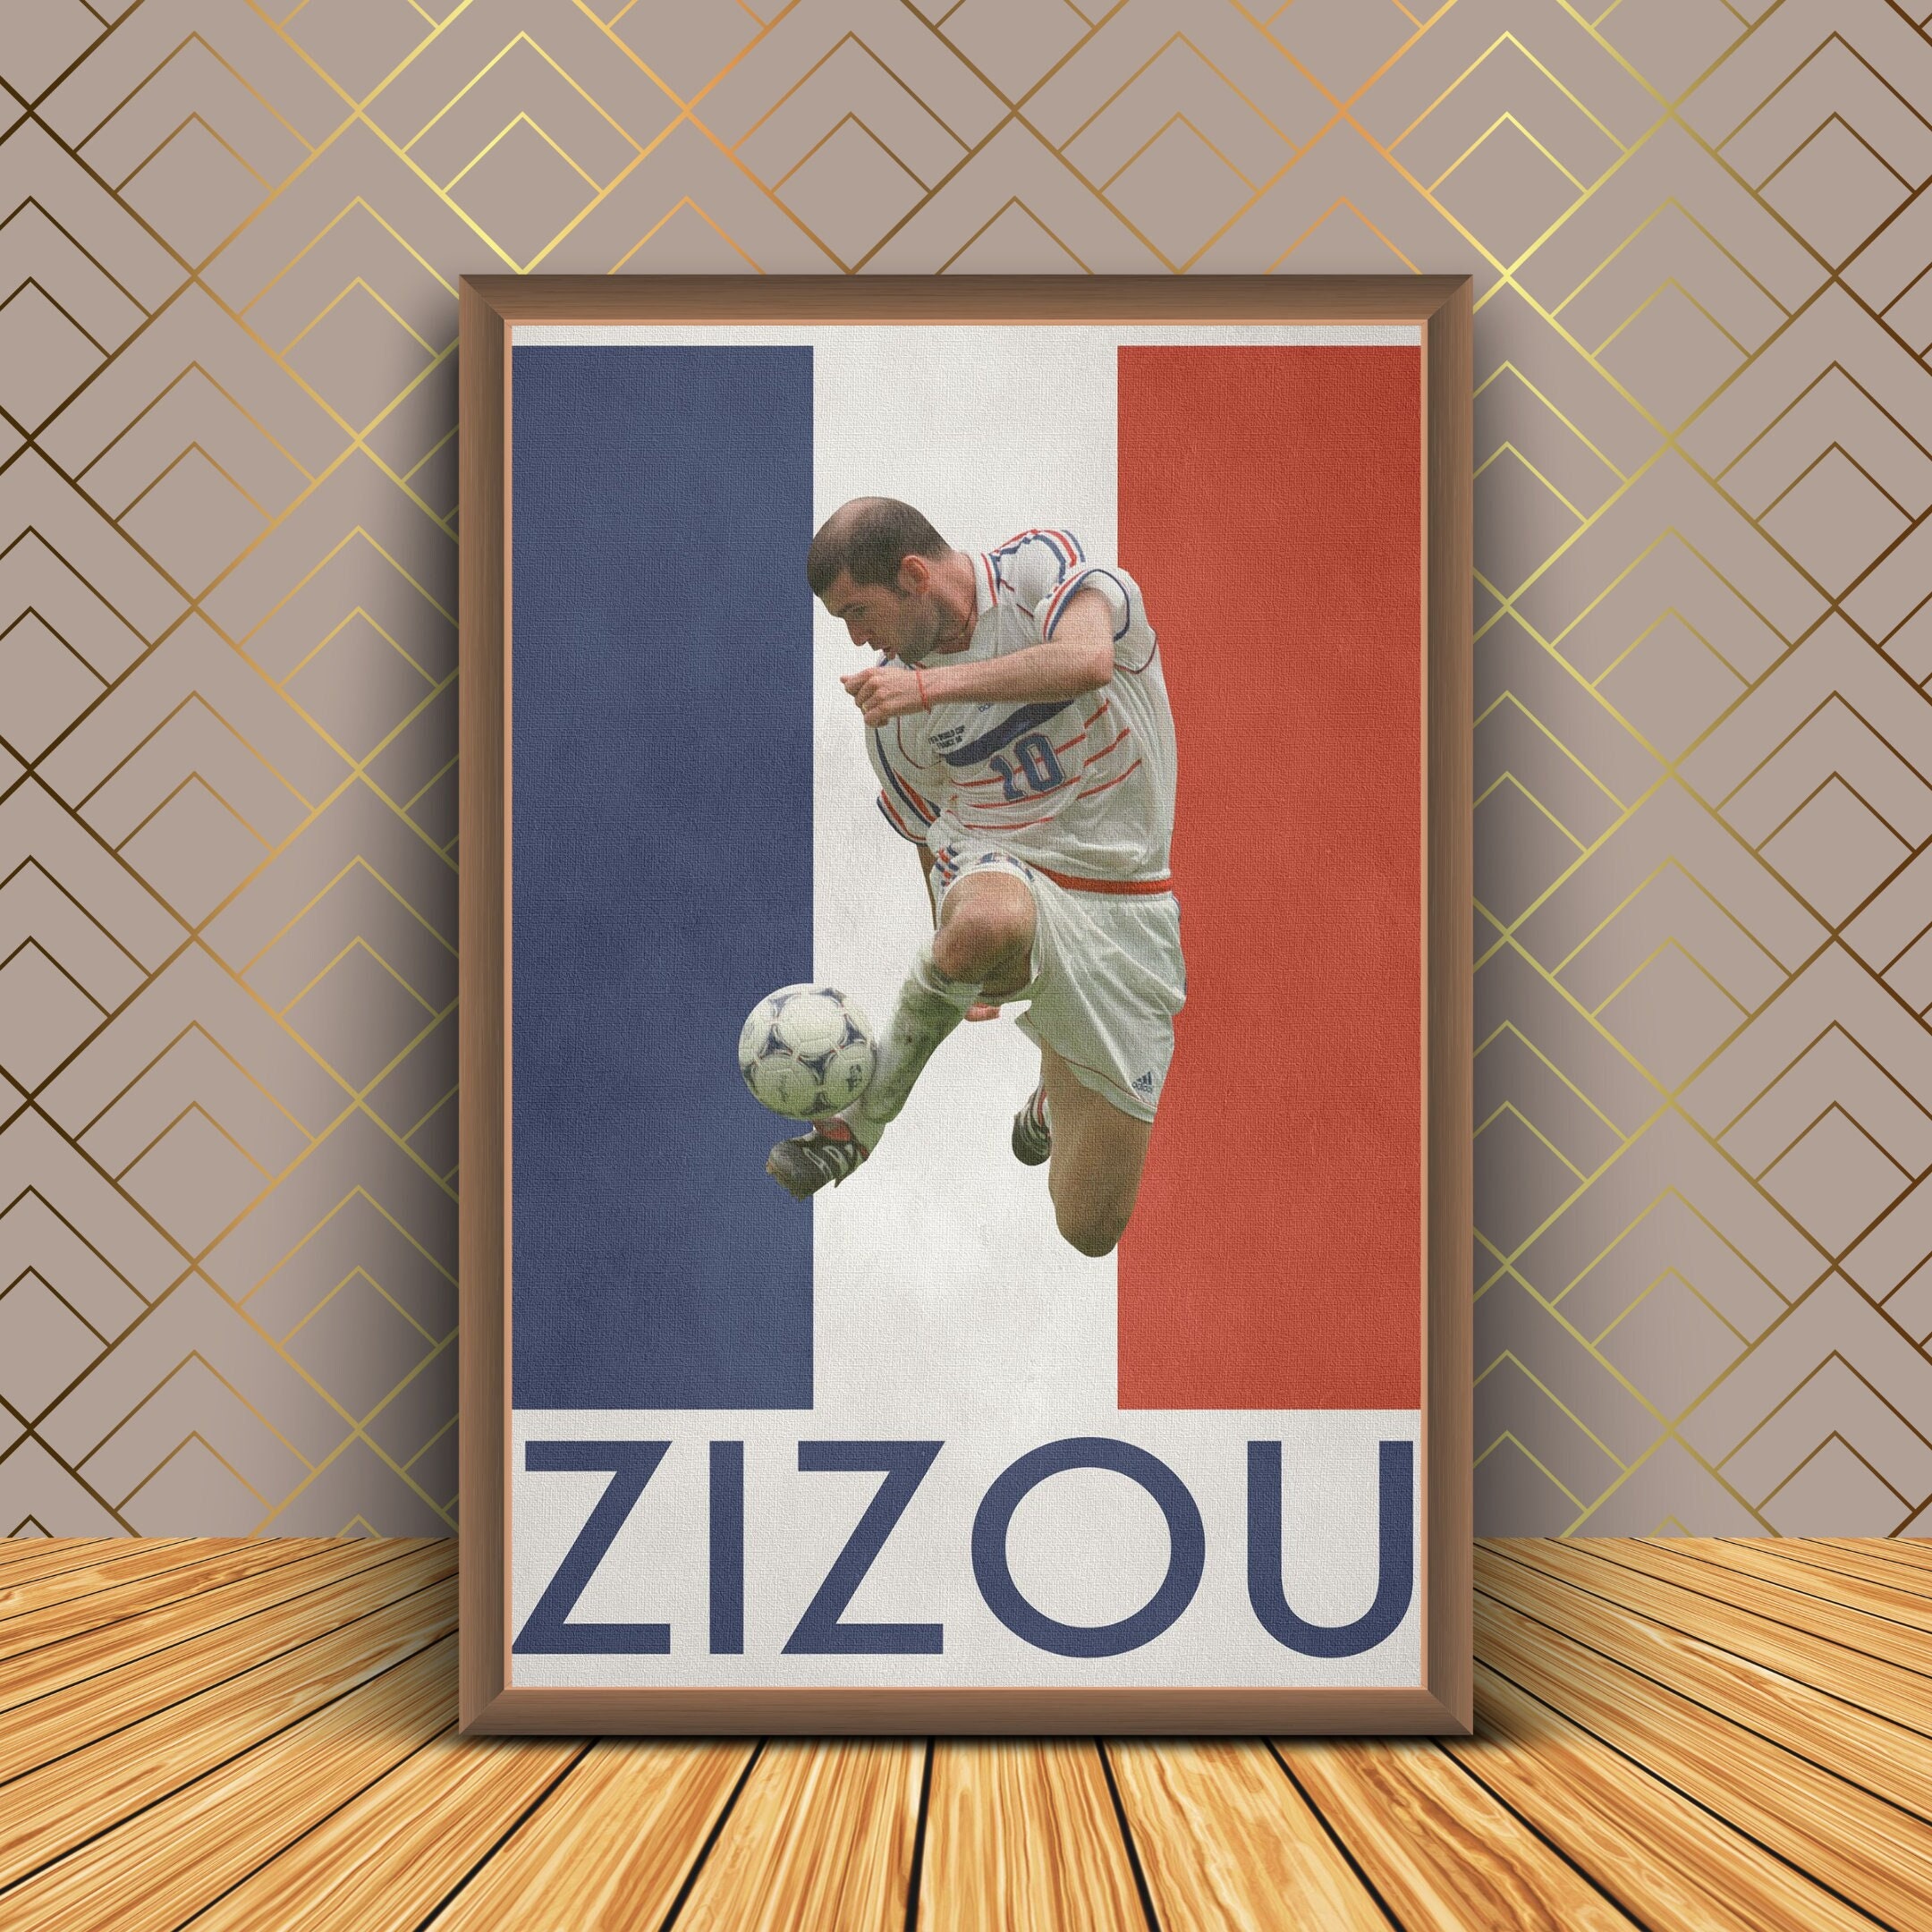 Wall Art Canvas Print of Maradona Zidane & Pele Table Football